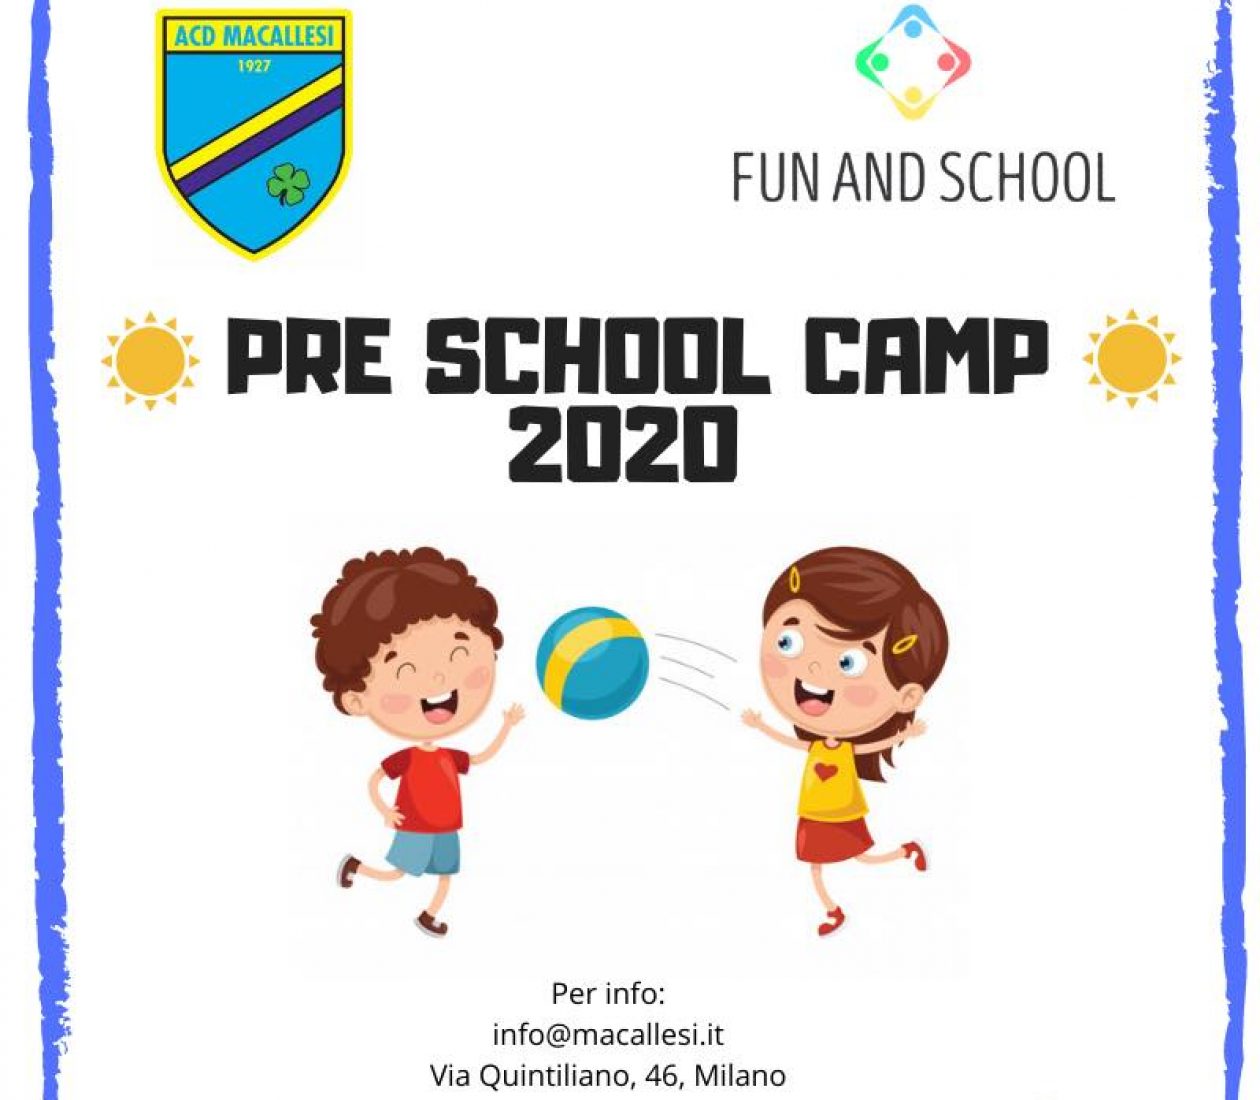 Pre School Camp 2020